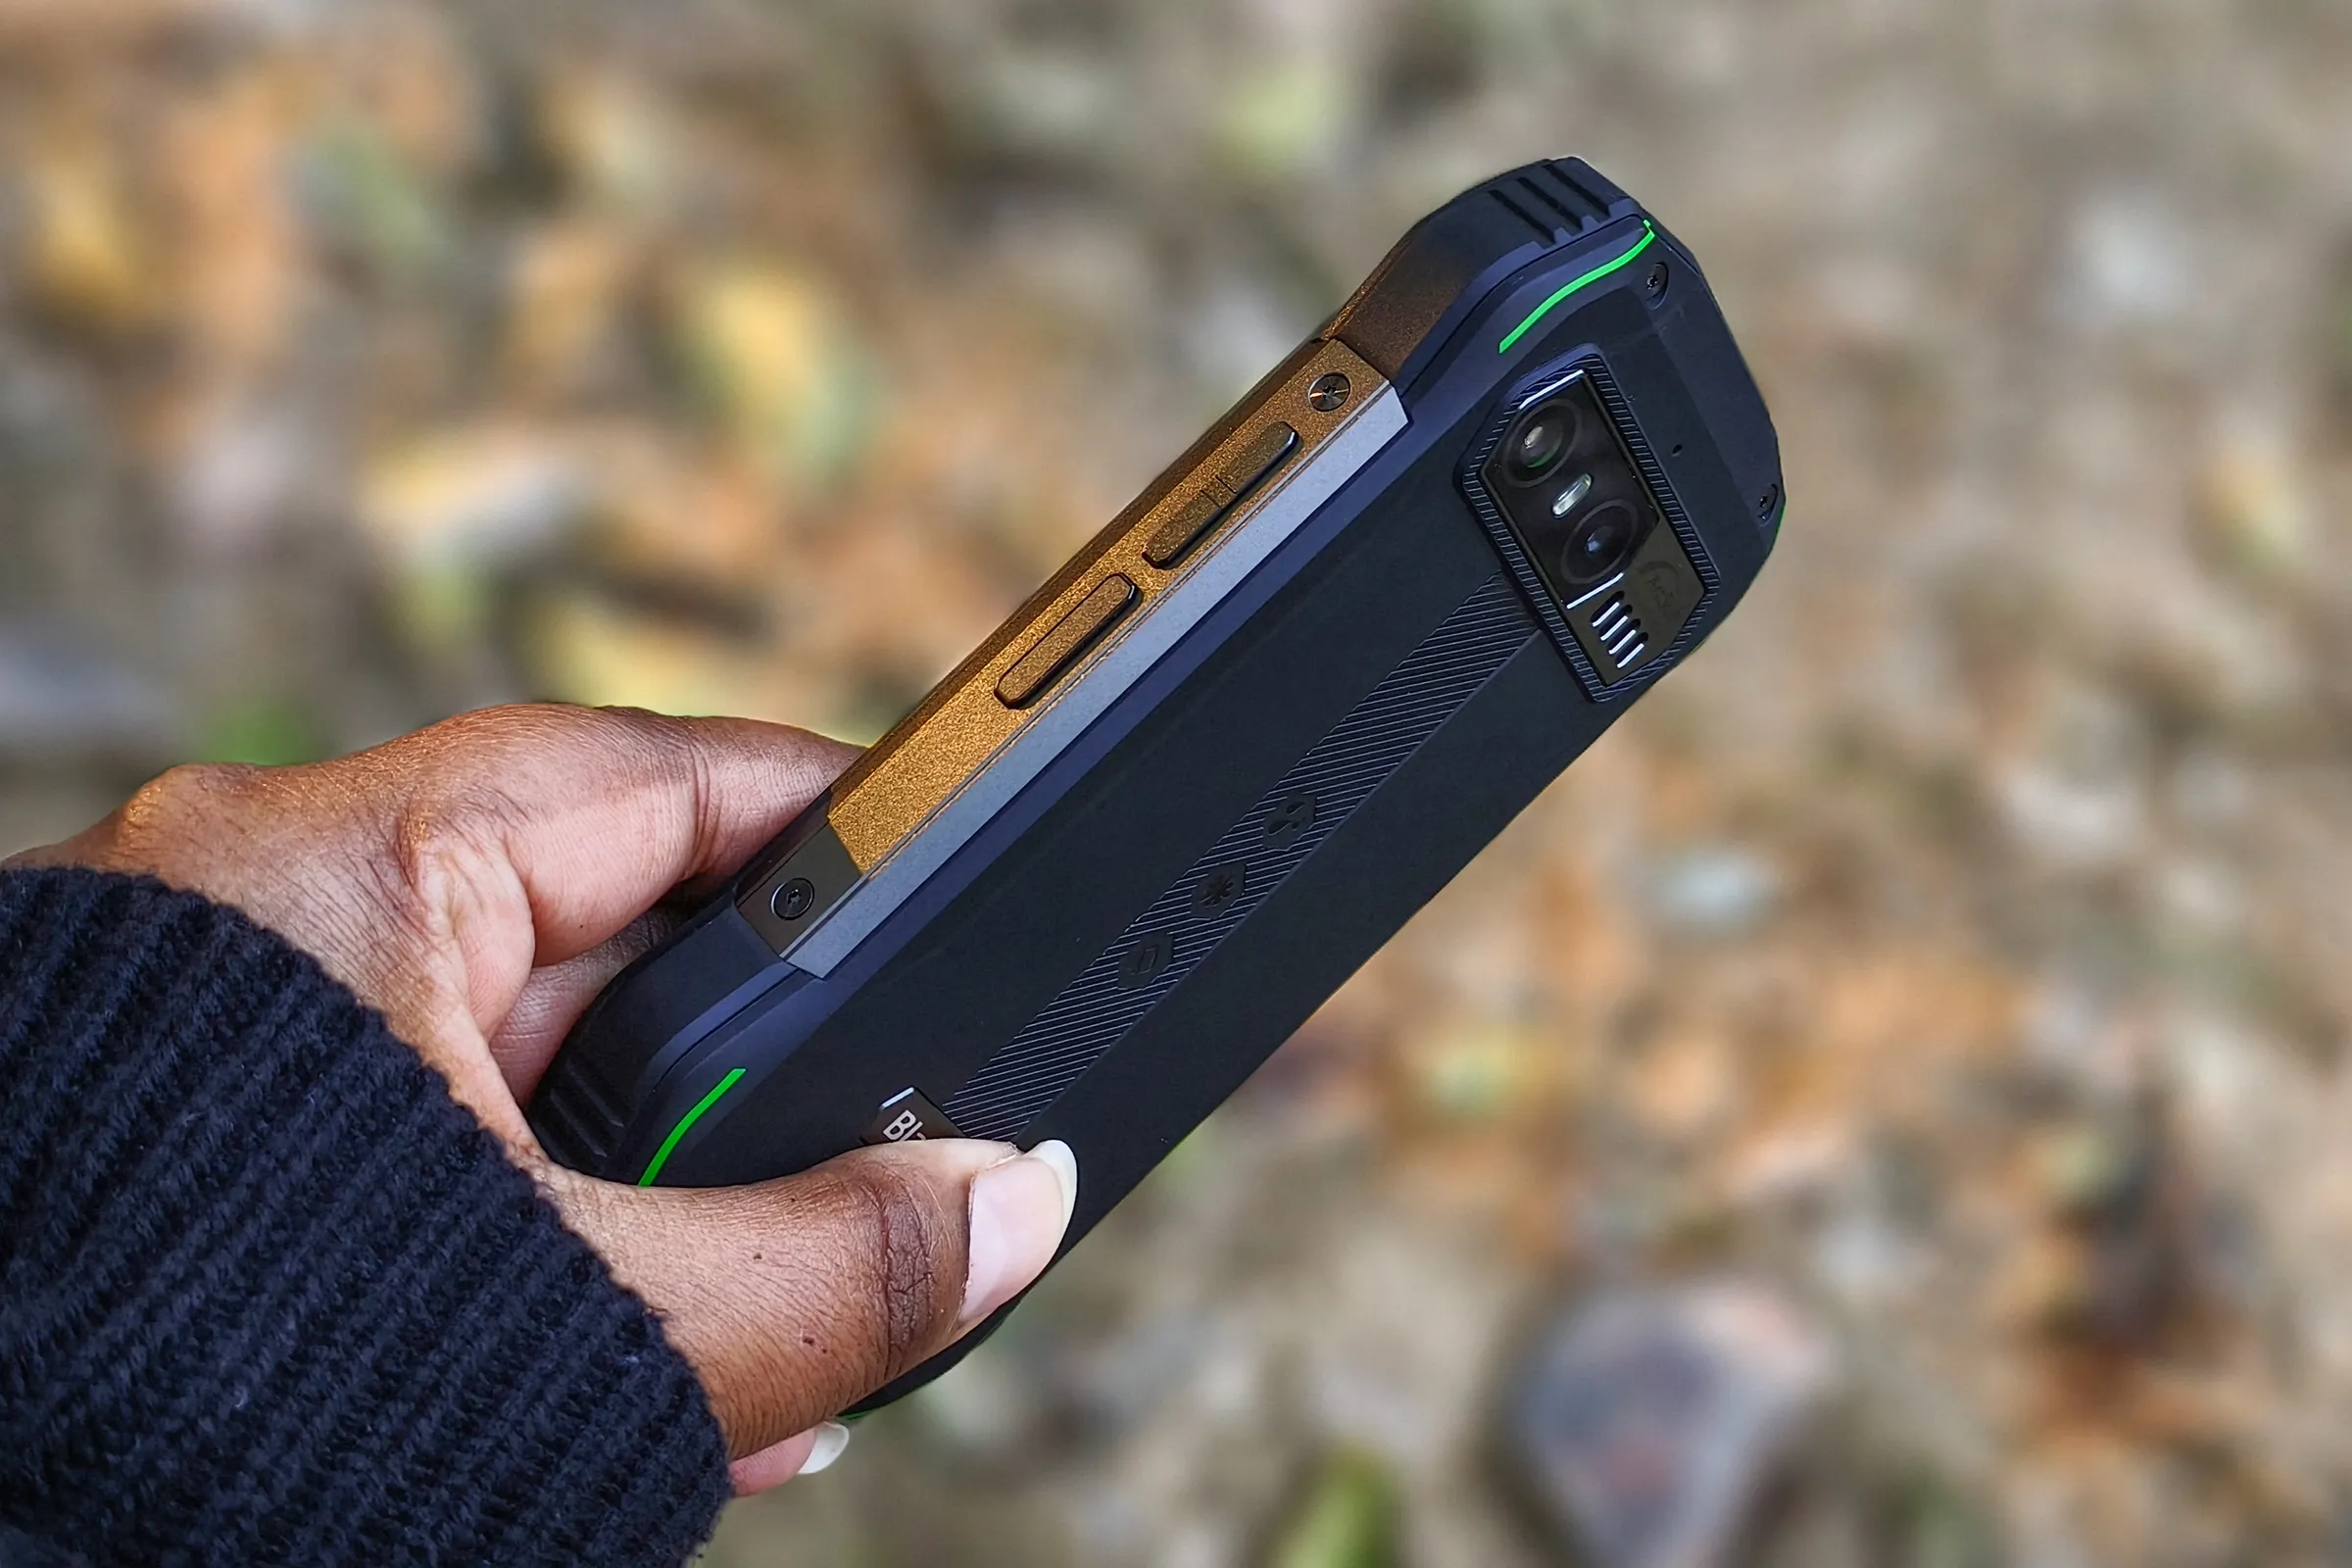 Persona sosteniendo el pequeño teléfono Android resistente Blacview N6000 en la mano contra hojas secas en el suelo.